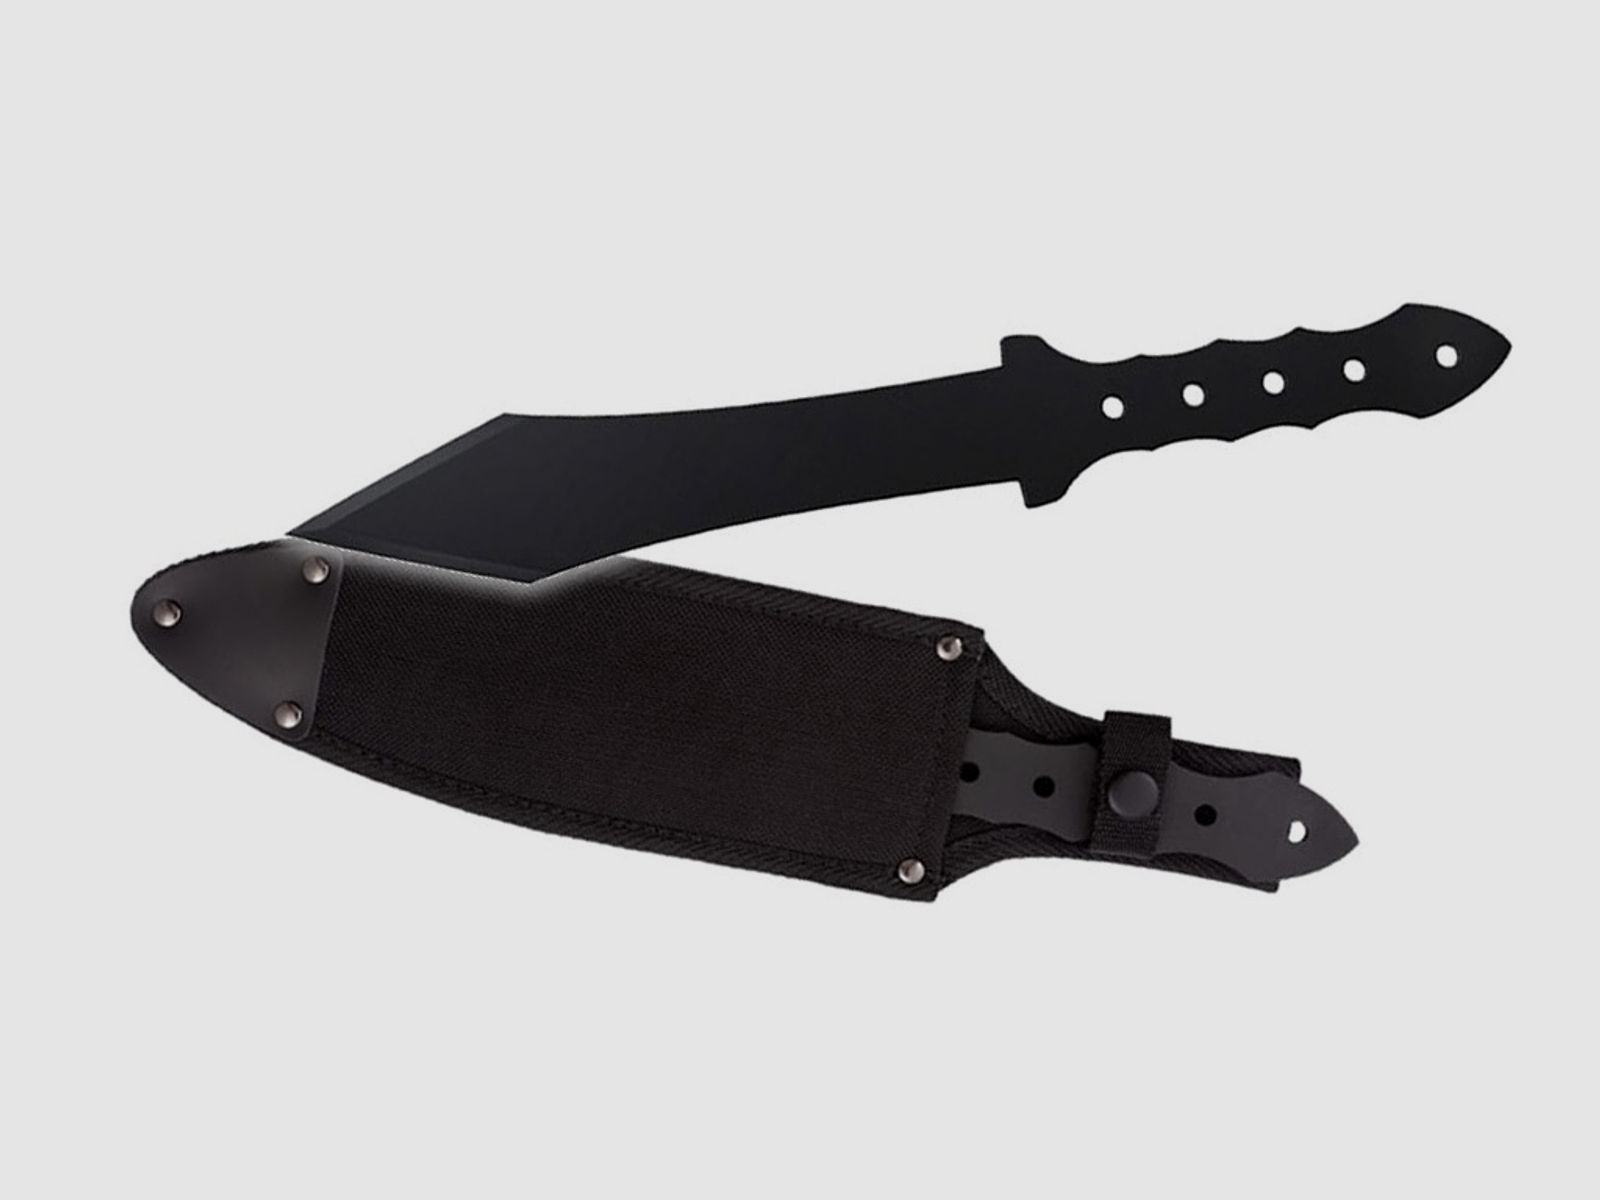 Wurfmesser Cold Steel Gladius Carbonstahl S50C KlingenlĂ¤nge 21 cm inklusive Scheide (P18)